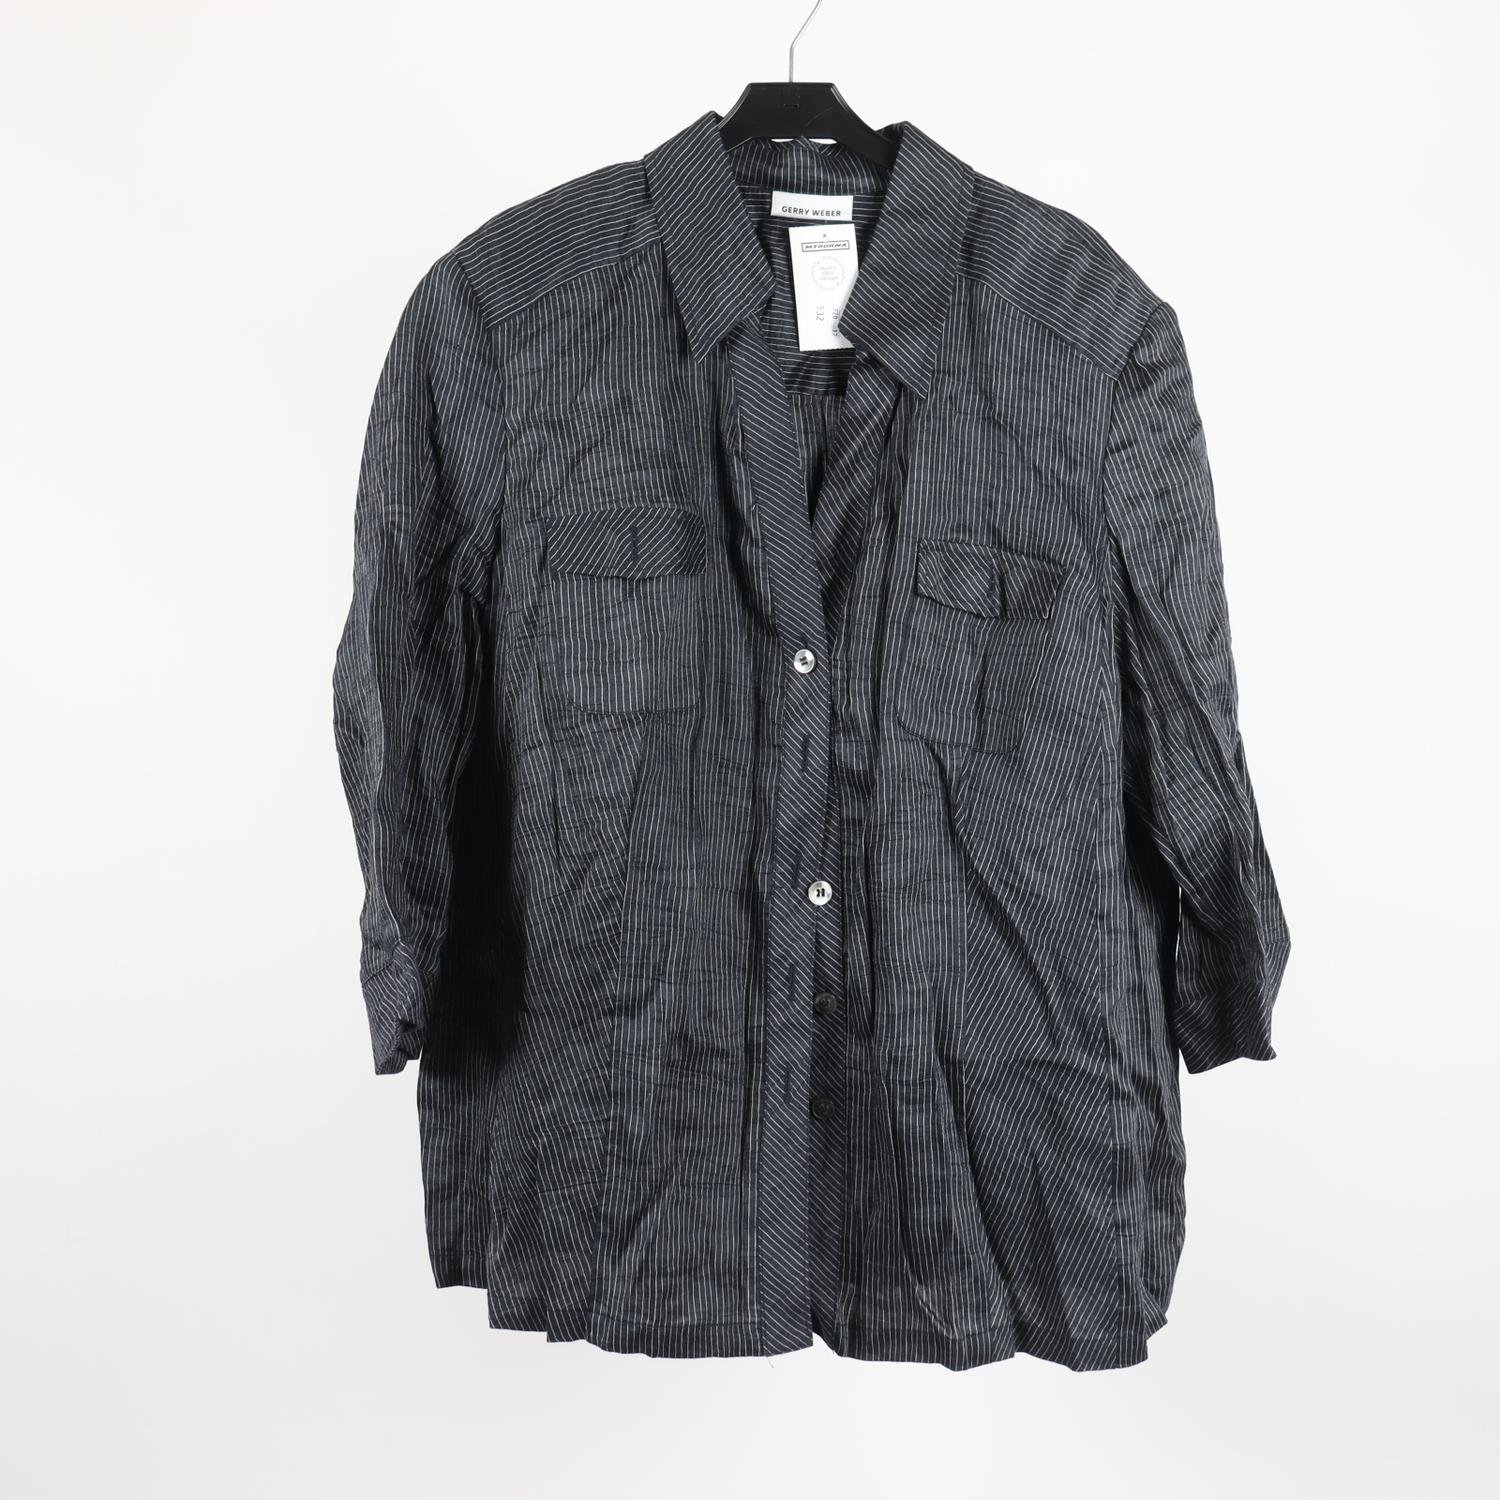 Skjorta, Gerry Weber, 85% lin, randig mörkblå/vit, stl.48